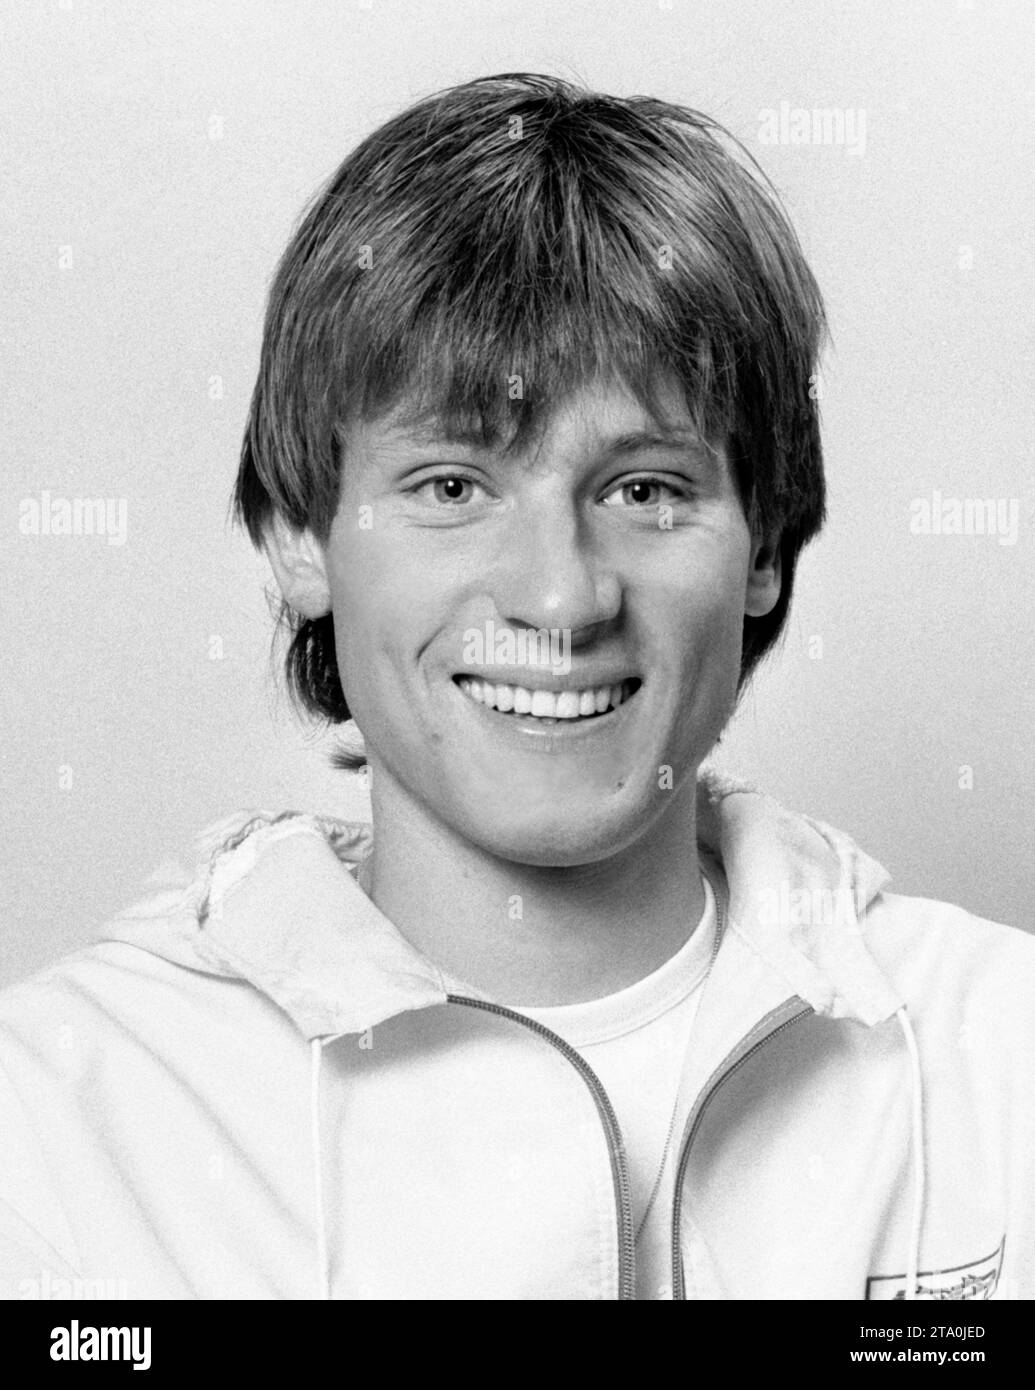 JOHNNY KROON coureur de demi-fond dans l'équipe nationale d'athlétisme de Suède Banque D'Images